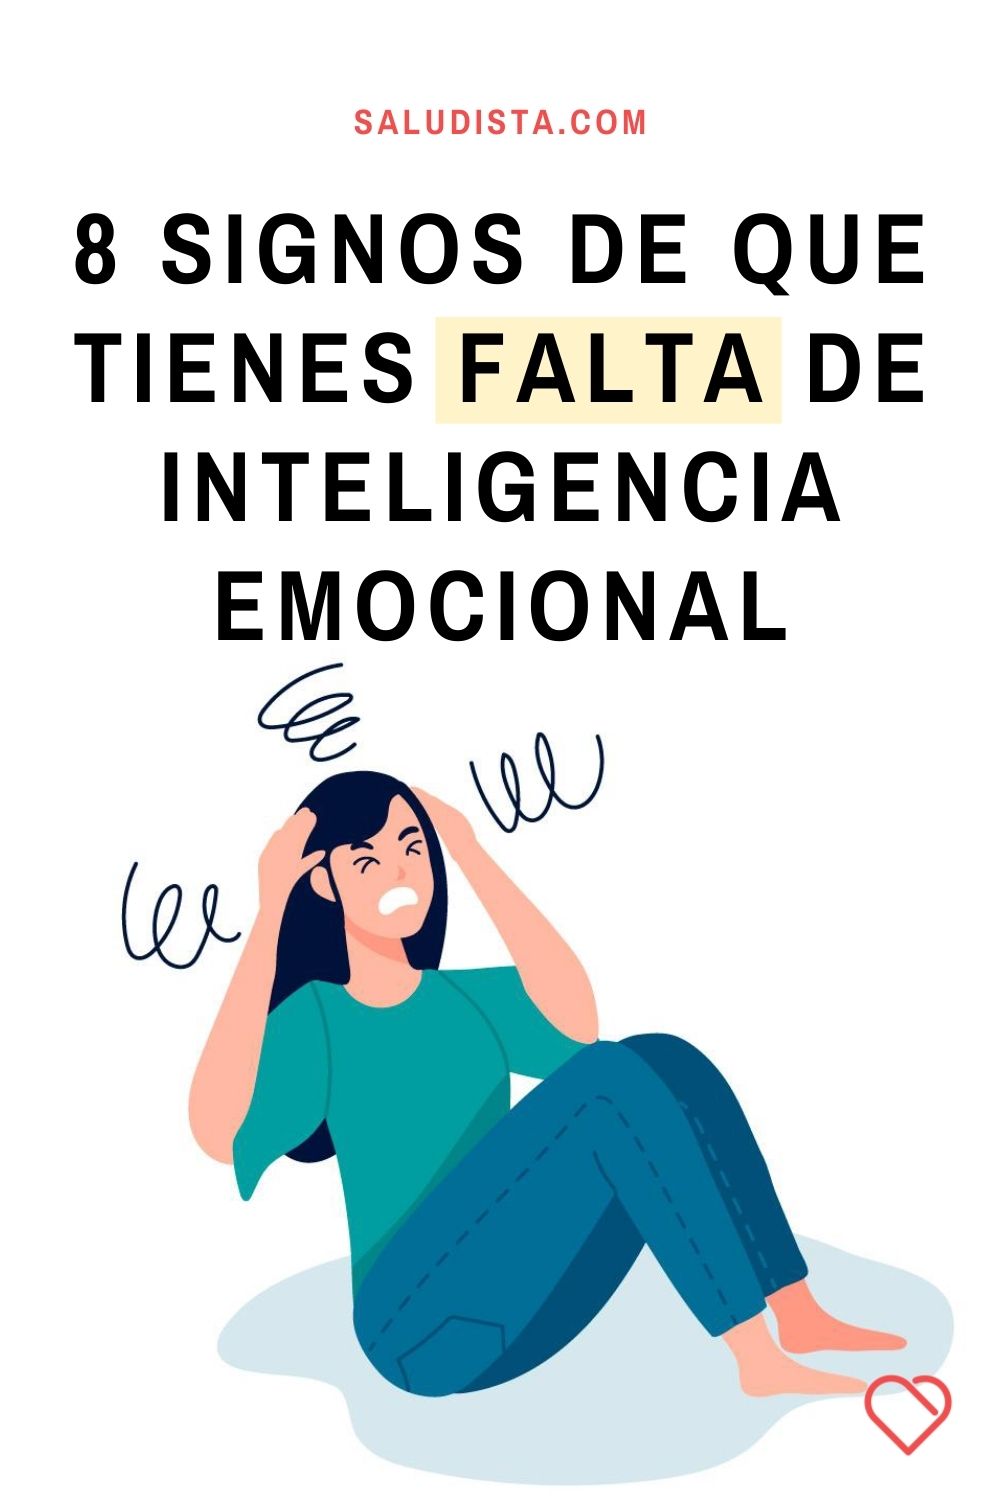 8 signos de que tienes falta de inteligencia emocional